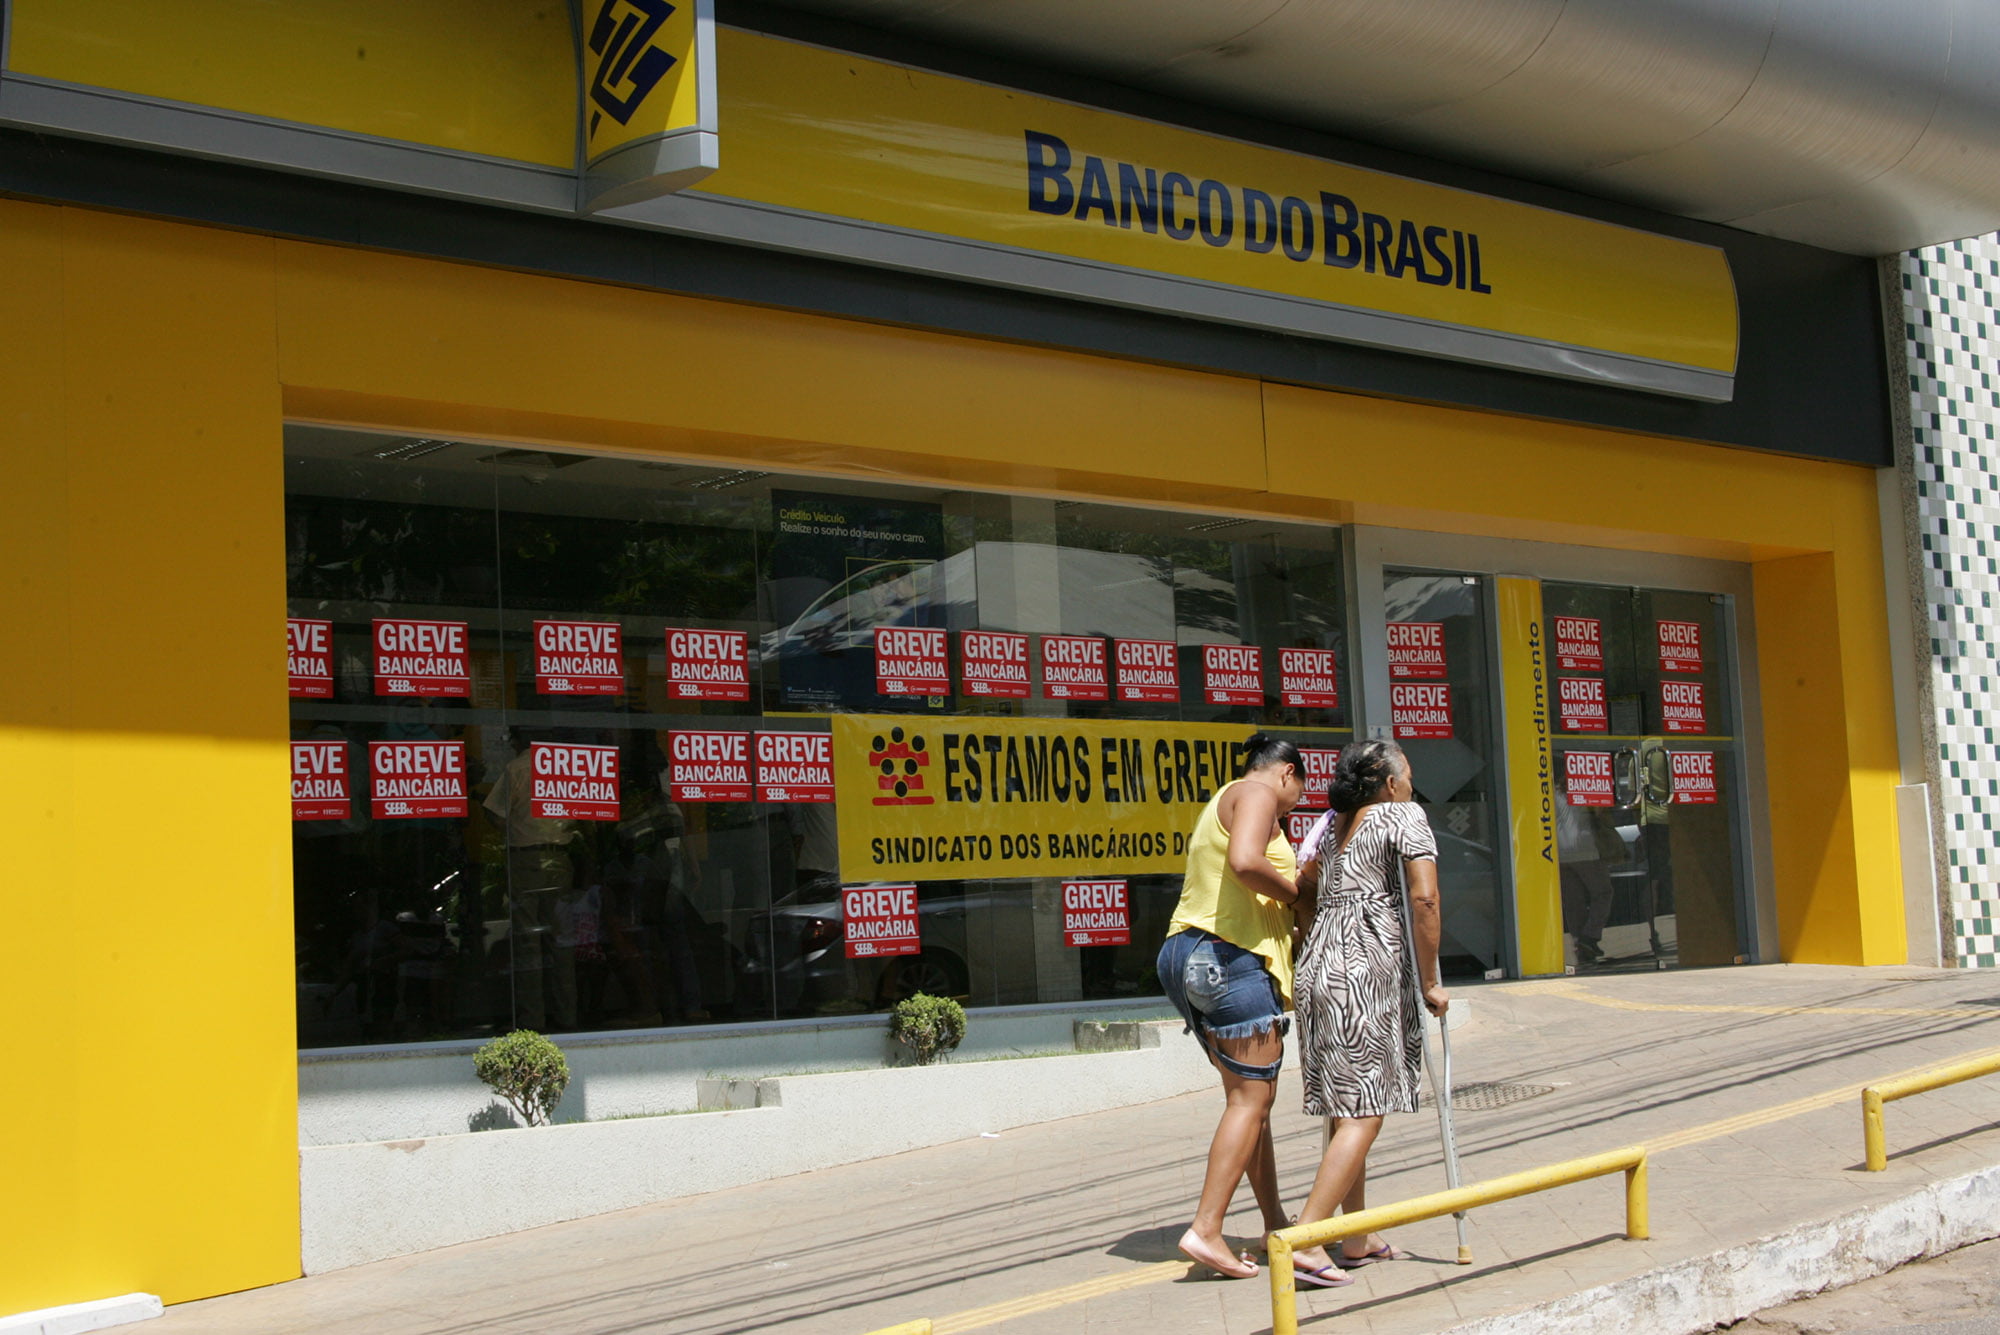 RIO BRANCO, ACRE - 06.10.2015 - Greve dos bancários fecha agências no Acre. Em Rio Branco agências bancárias cobertas de cartazes que estão em greve por tempo indeterminado. Foto: Odair Leal/Folhapress